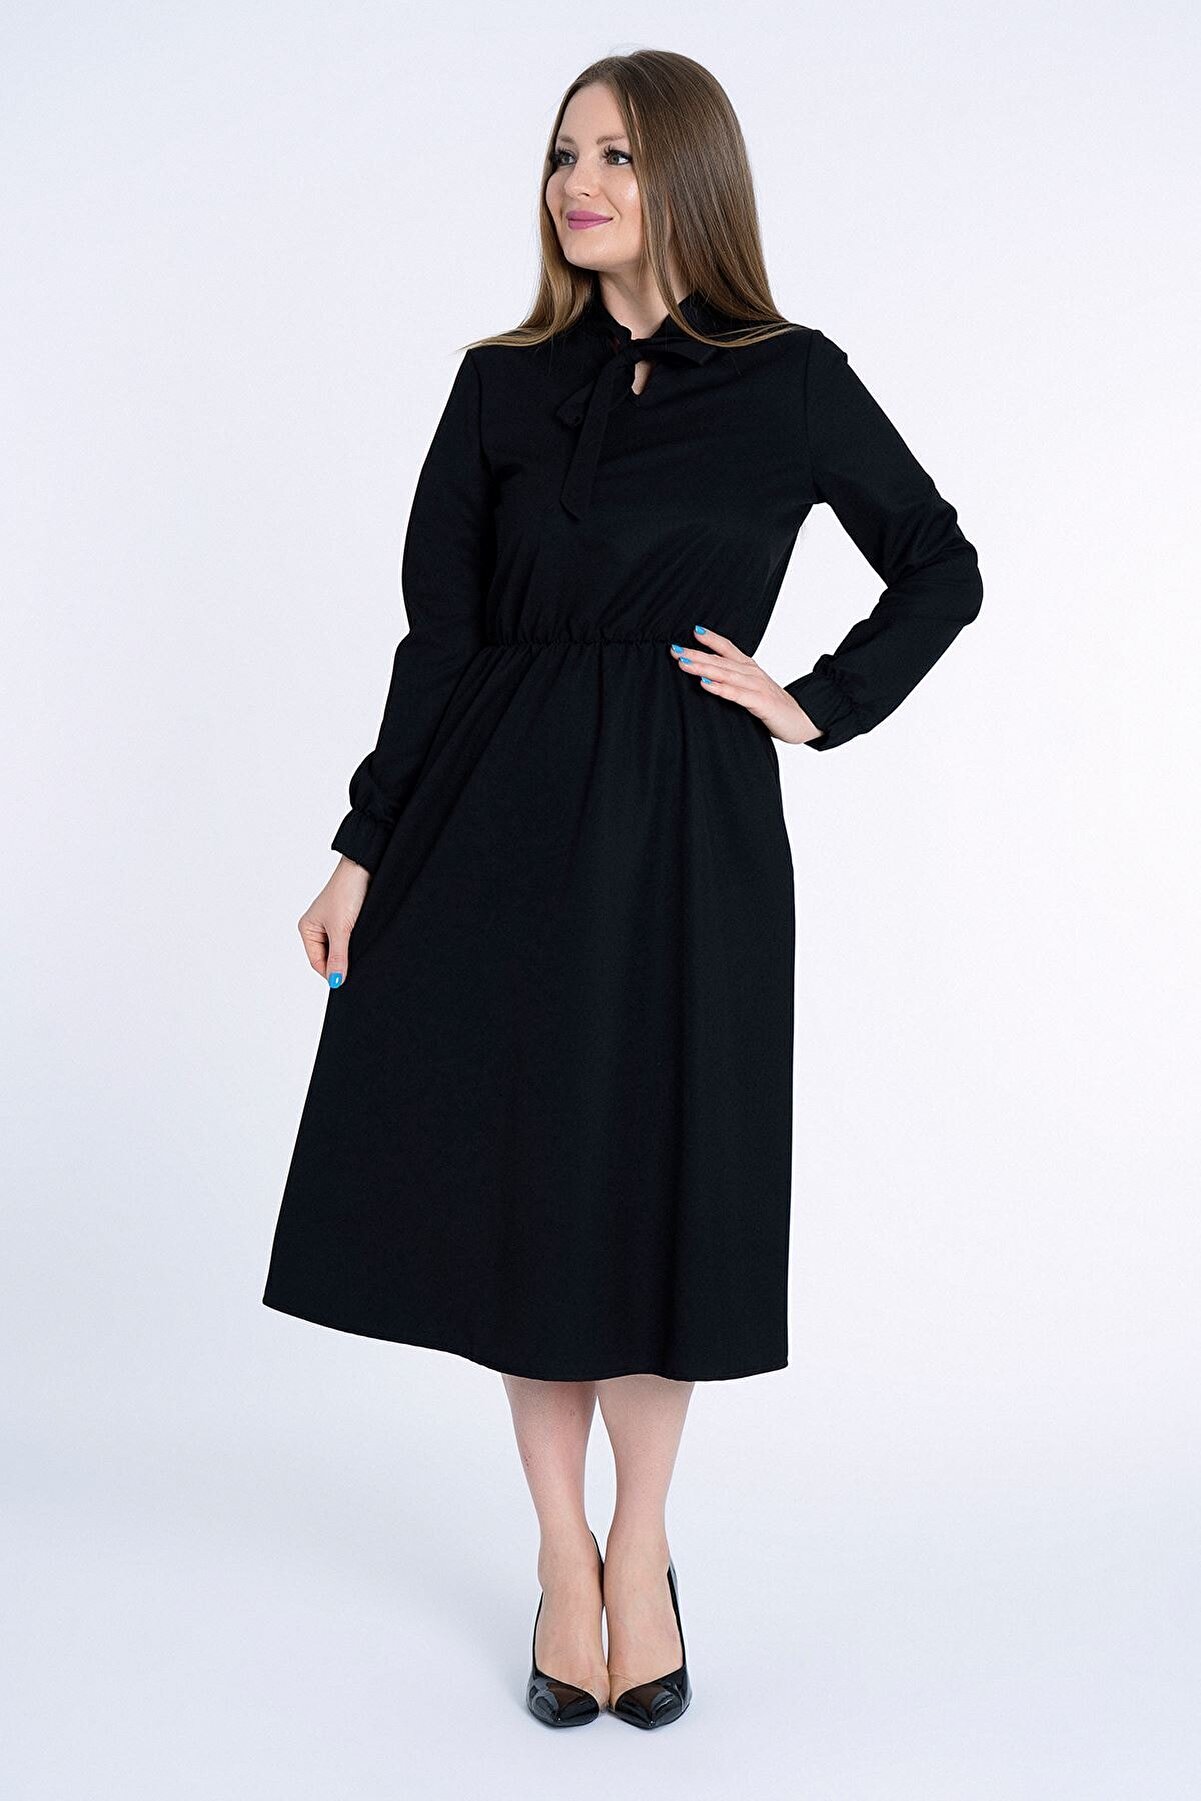 MissVina Kadın Siyah Yakası Bağcıklı Kolu Lastikli Elbise K-5954